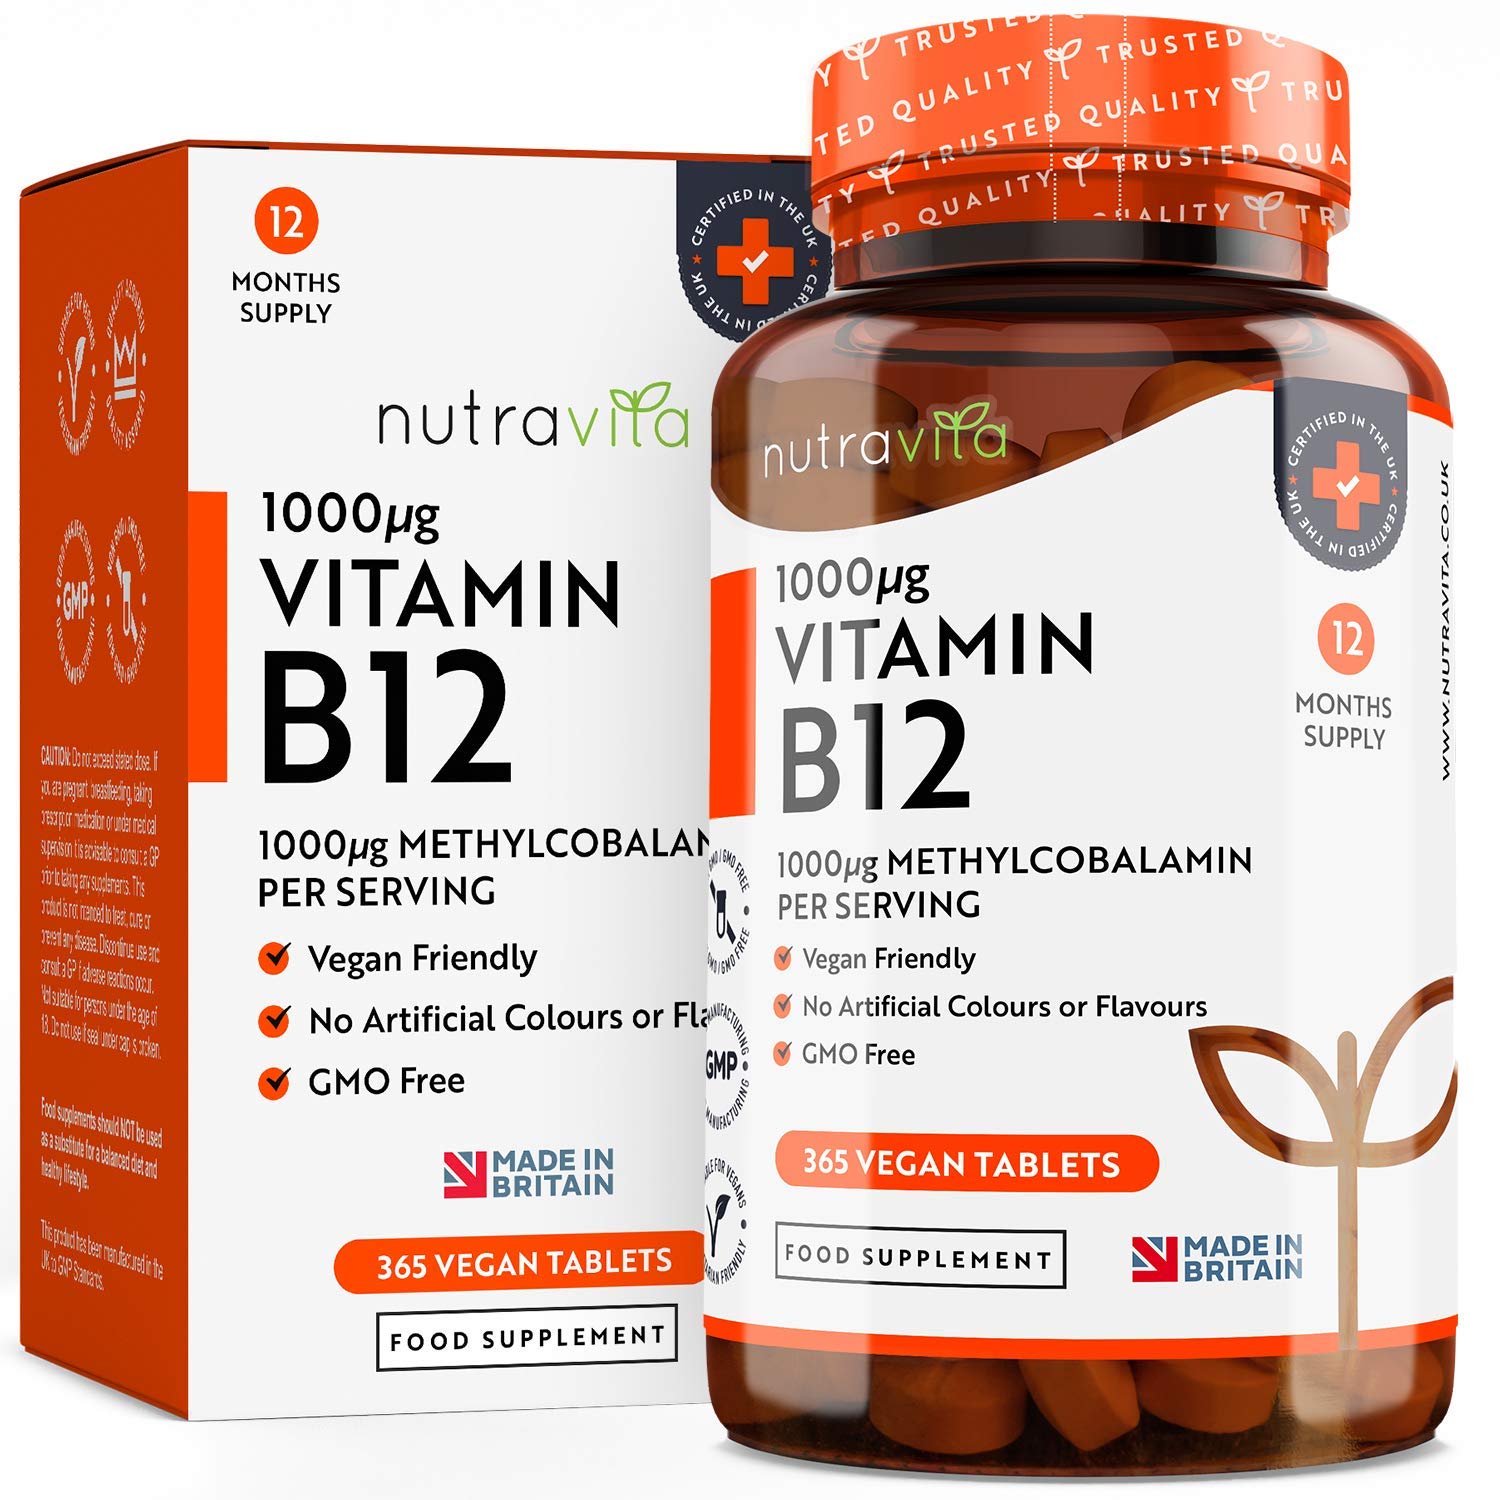 Glimp Comorama met de klok mee Seniors et vitamine B12 : comment prévenir une carence | Cap Retraite